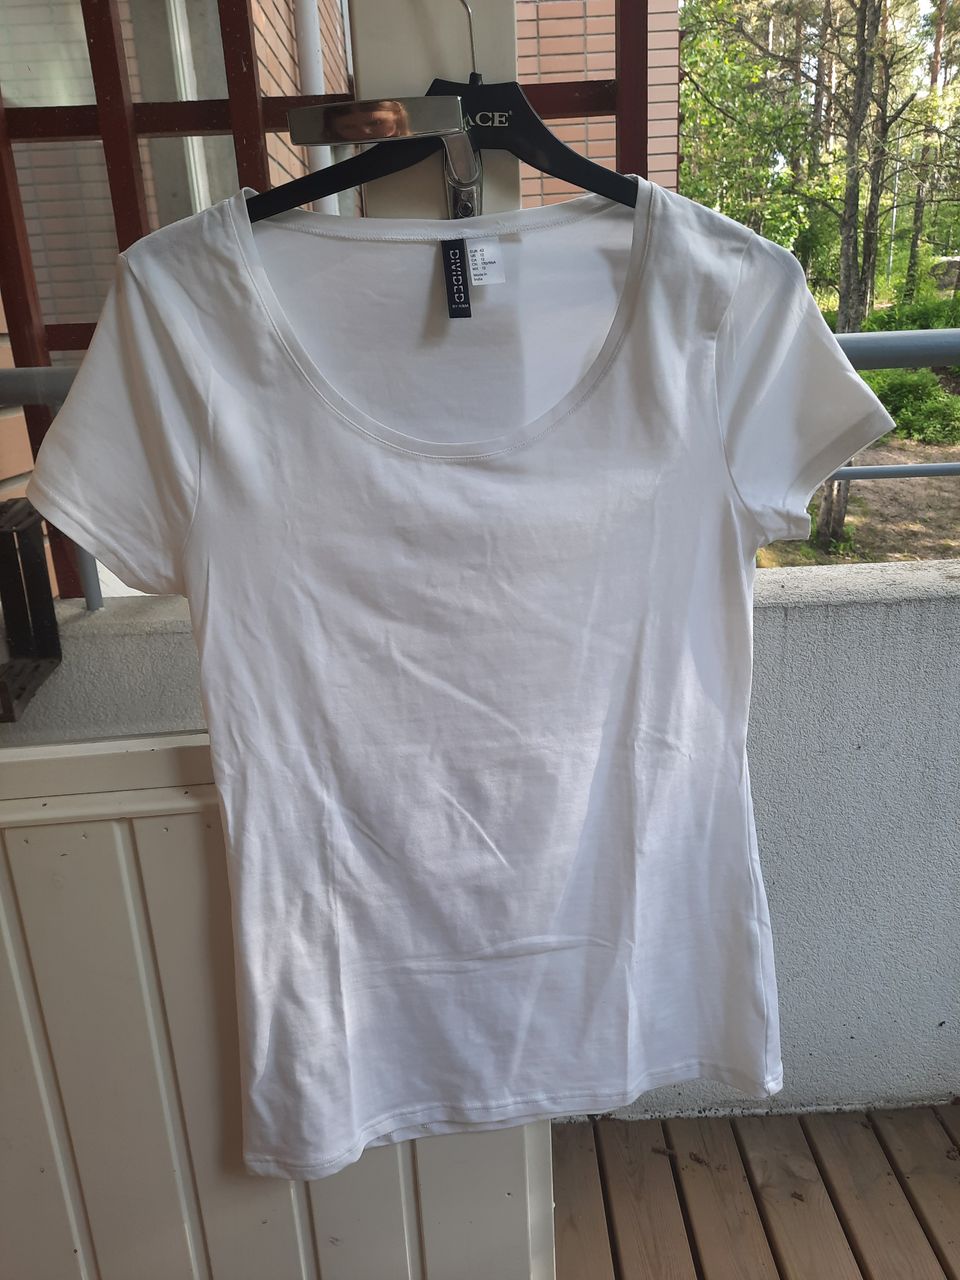 Käyttämätön valkoinen T-paita. Koko n.M-L